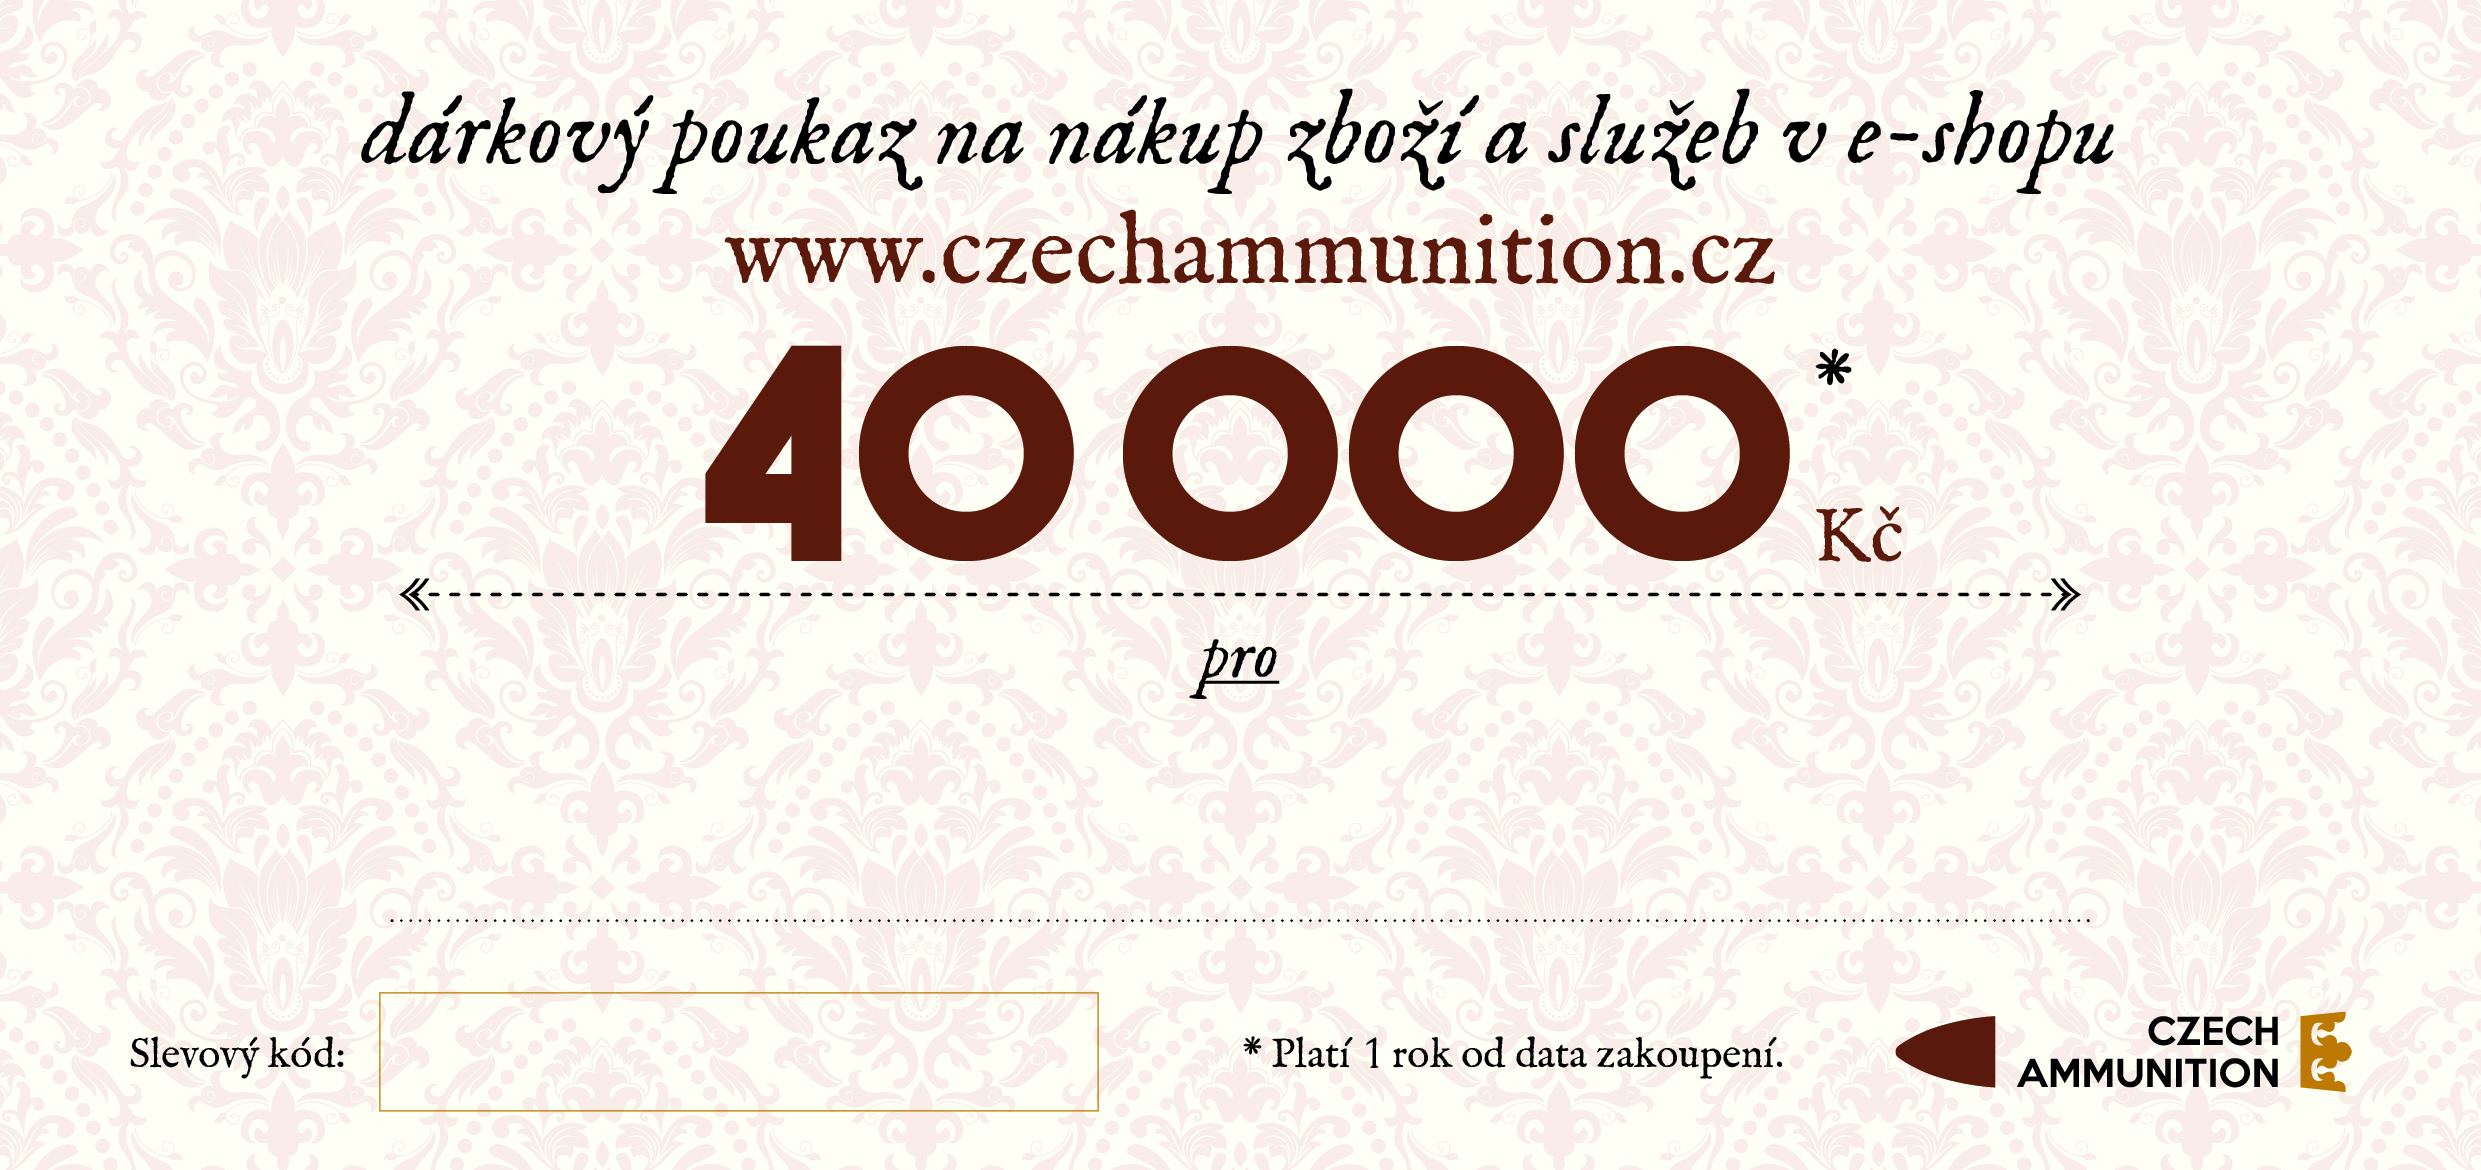 Dárkový poukaz na nákup v e-shopu www.czechammunition.cz v hodnotě 40.000 Kč